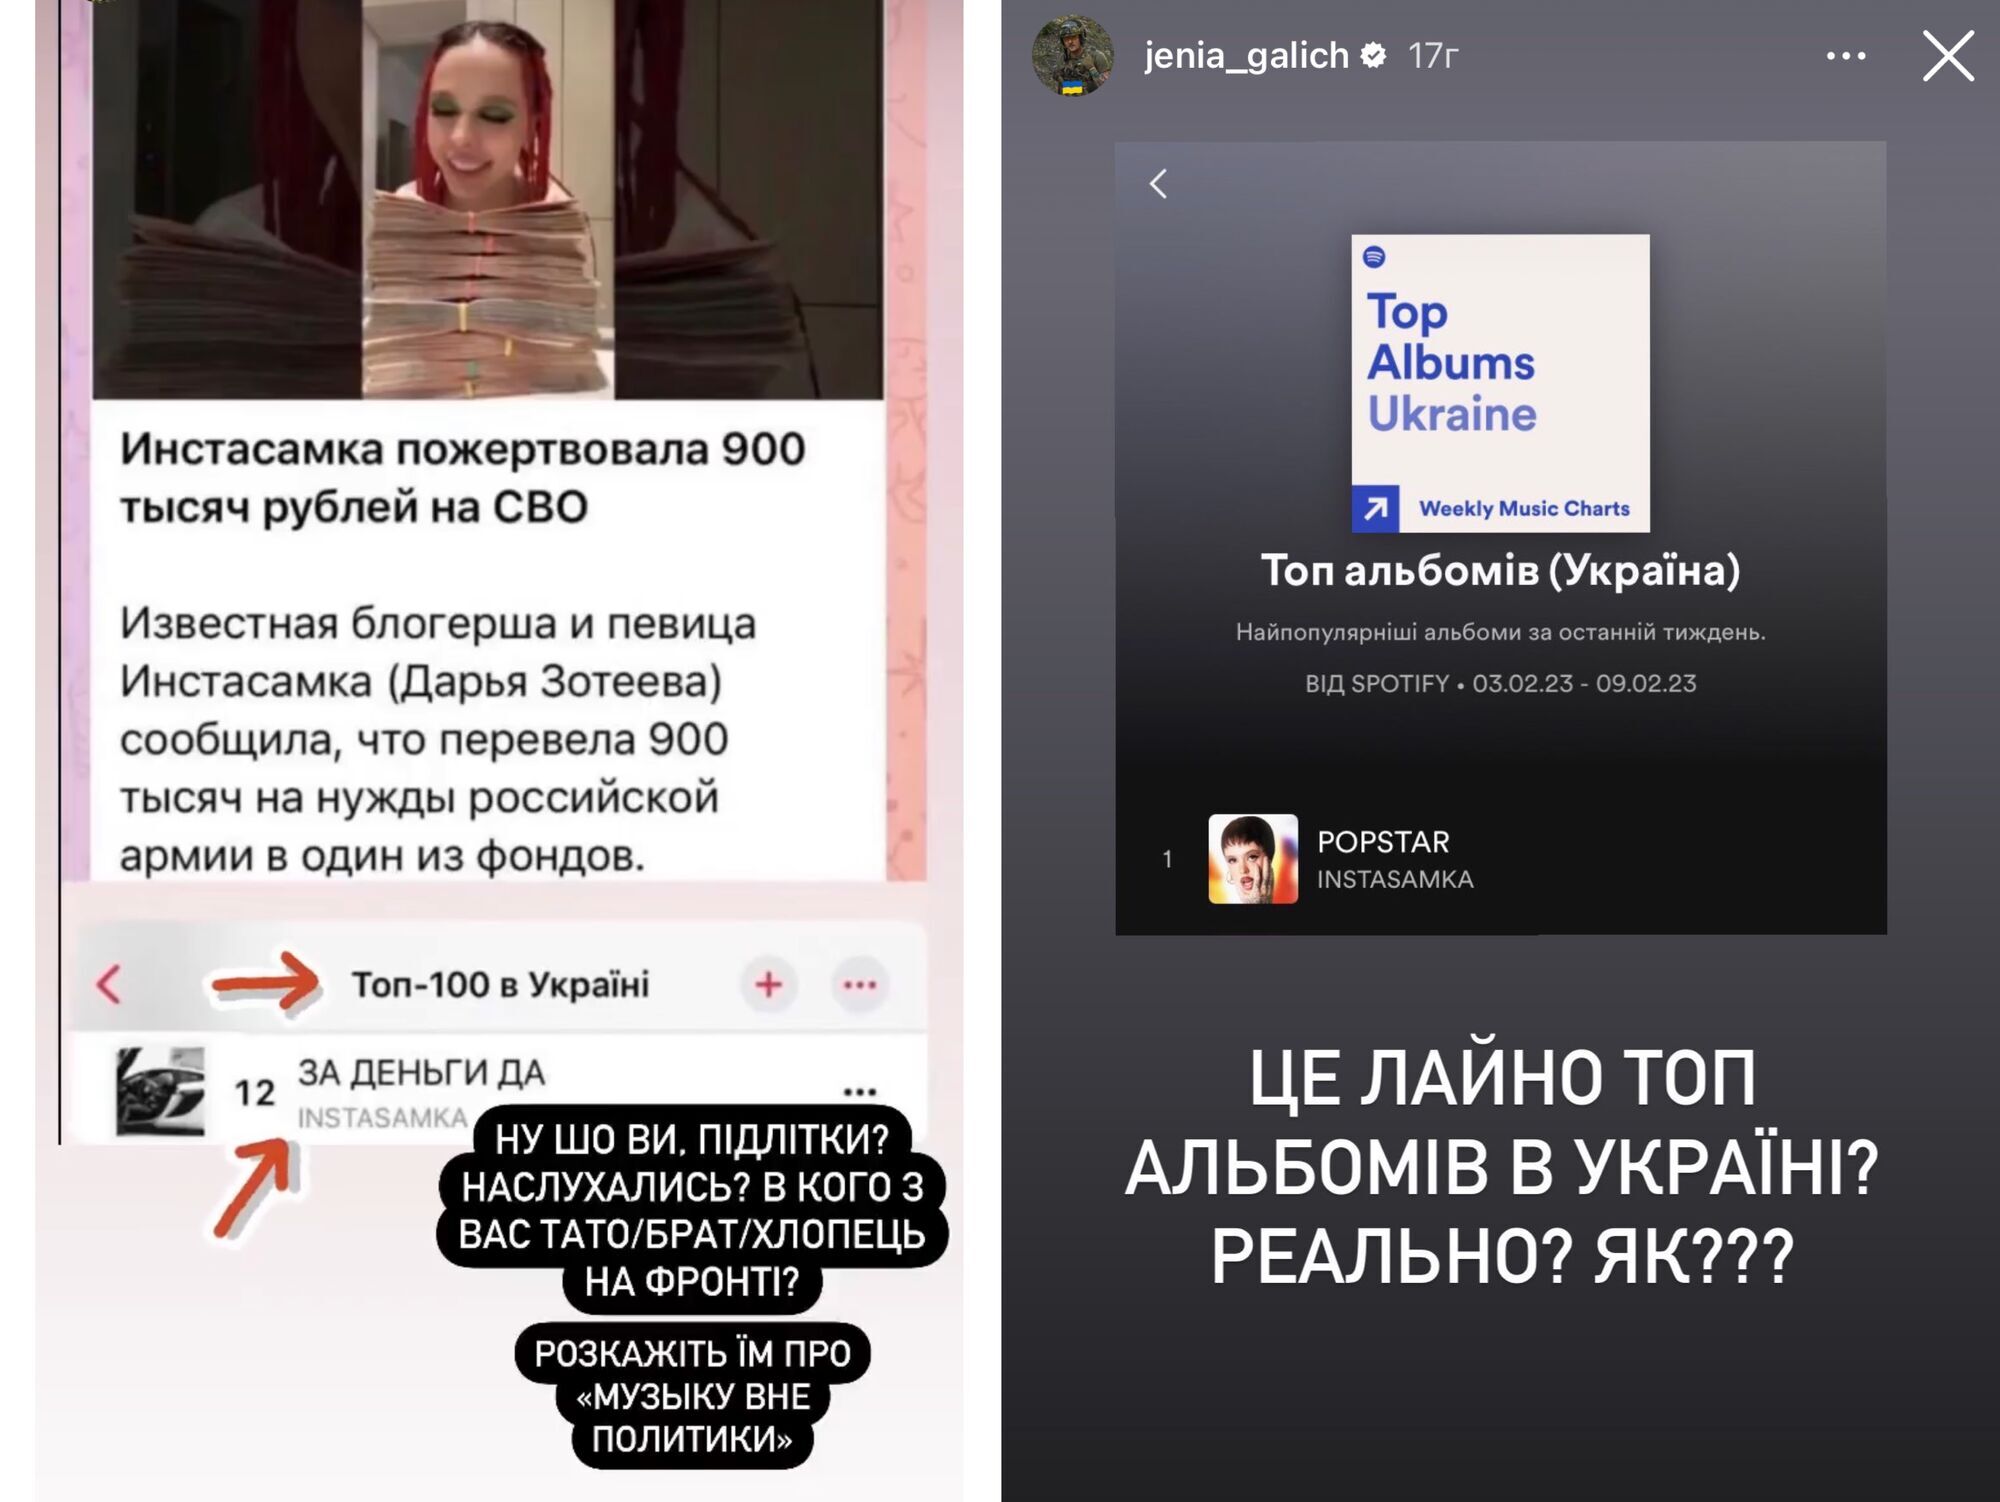 Женя Галич емоційно звернувся до українських фанатів Інстасамки та інших російських співаків: скільки ще потрібно загиблих?